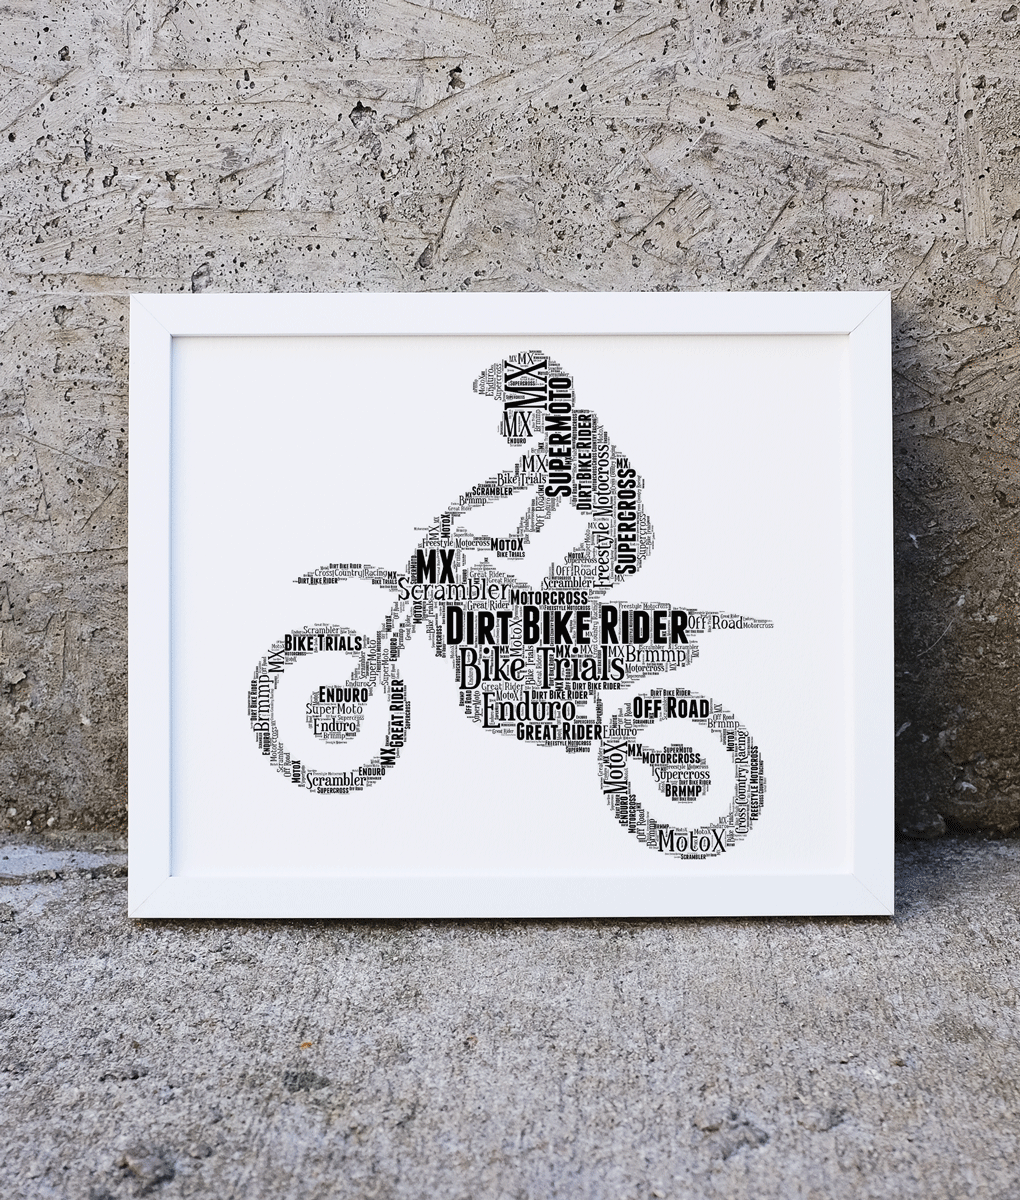 Wall Art Print Motocross sport, Gifts & Merchandise